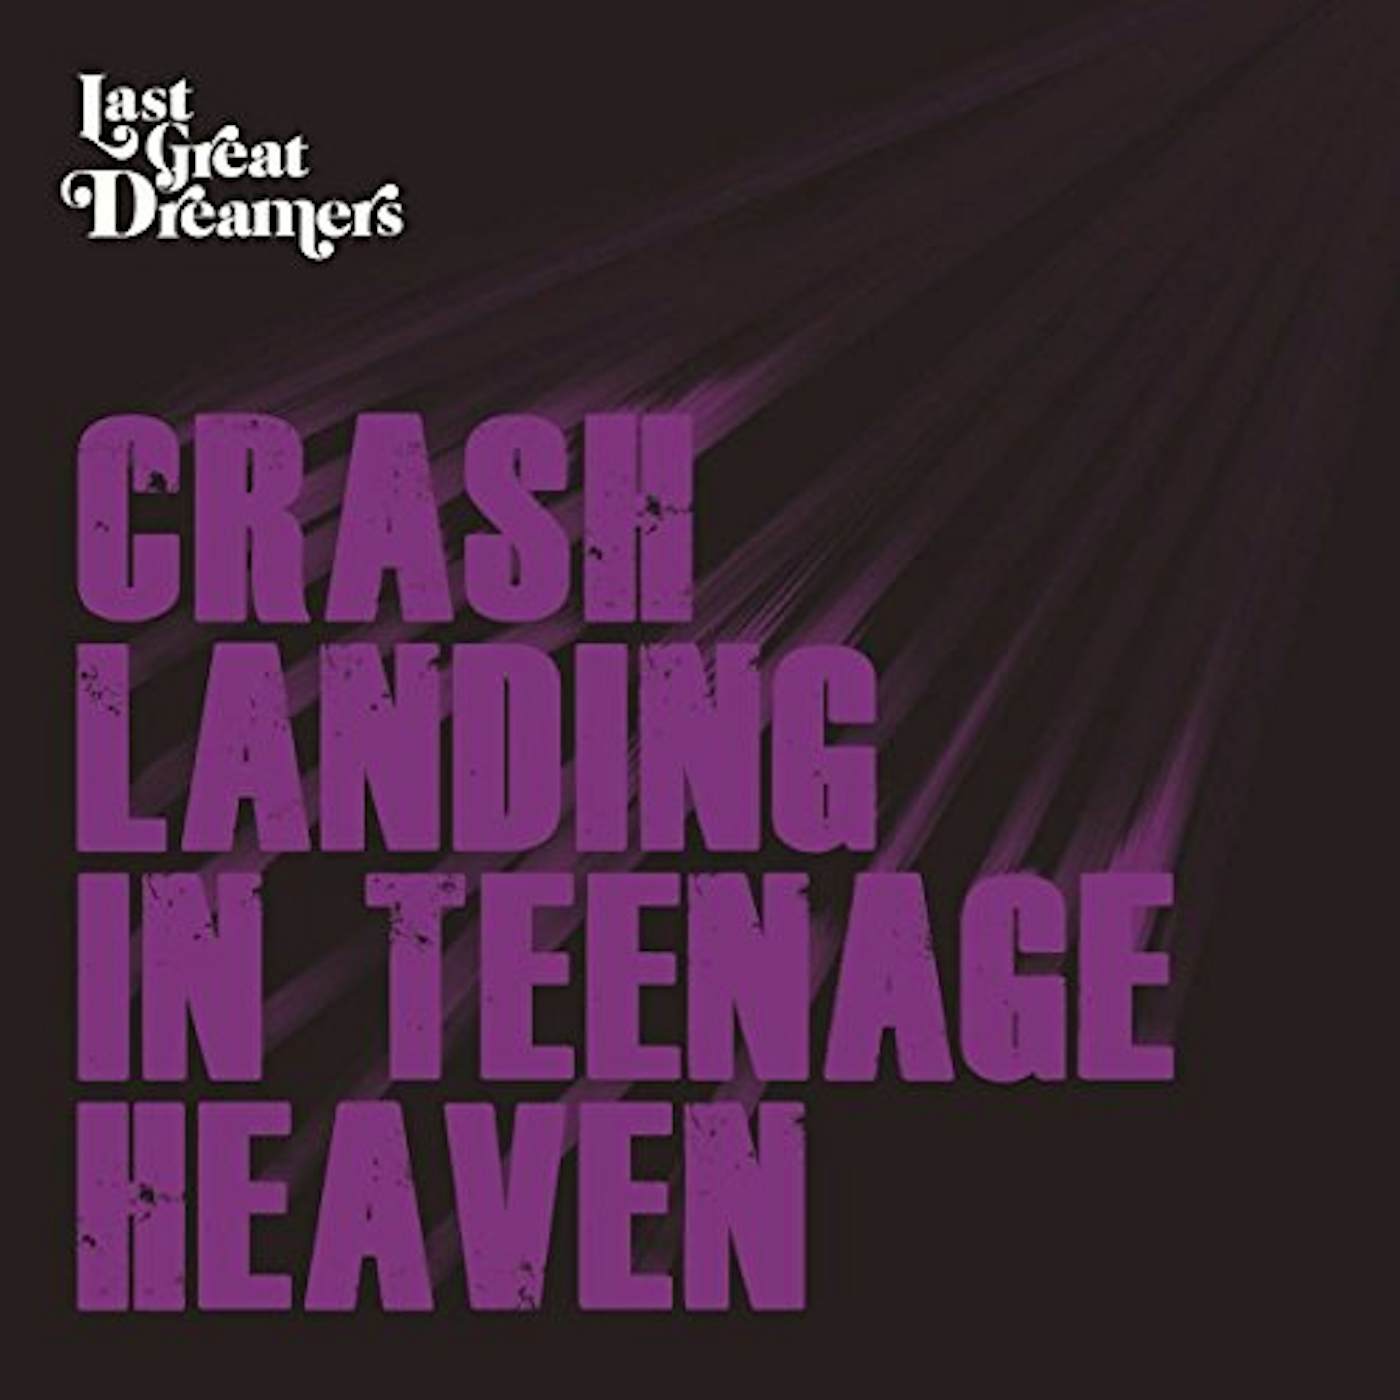 Last Great Dreamers CRASH LANDING IN TEENAGE HEAVEN CD